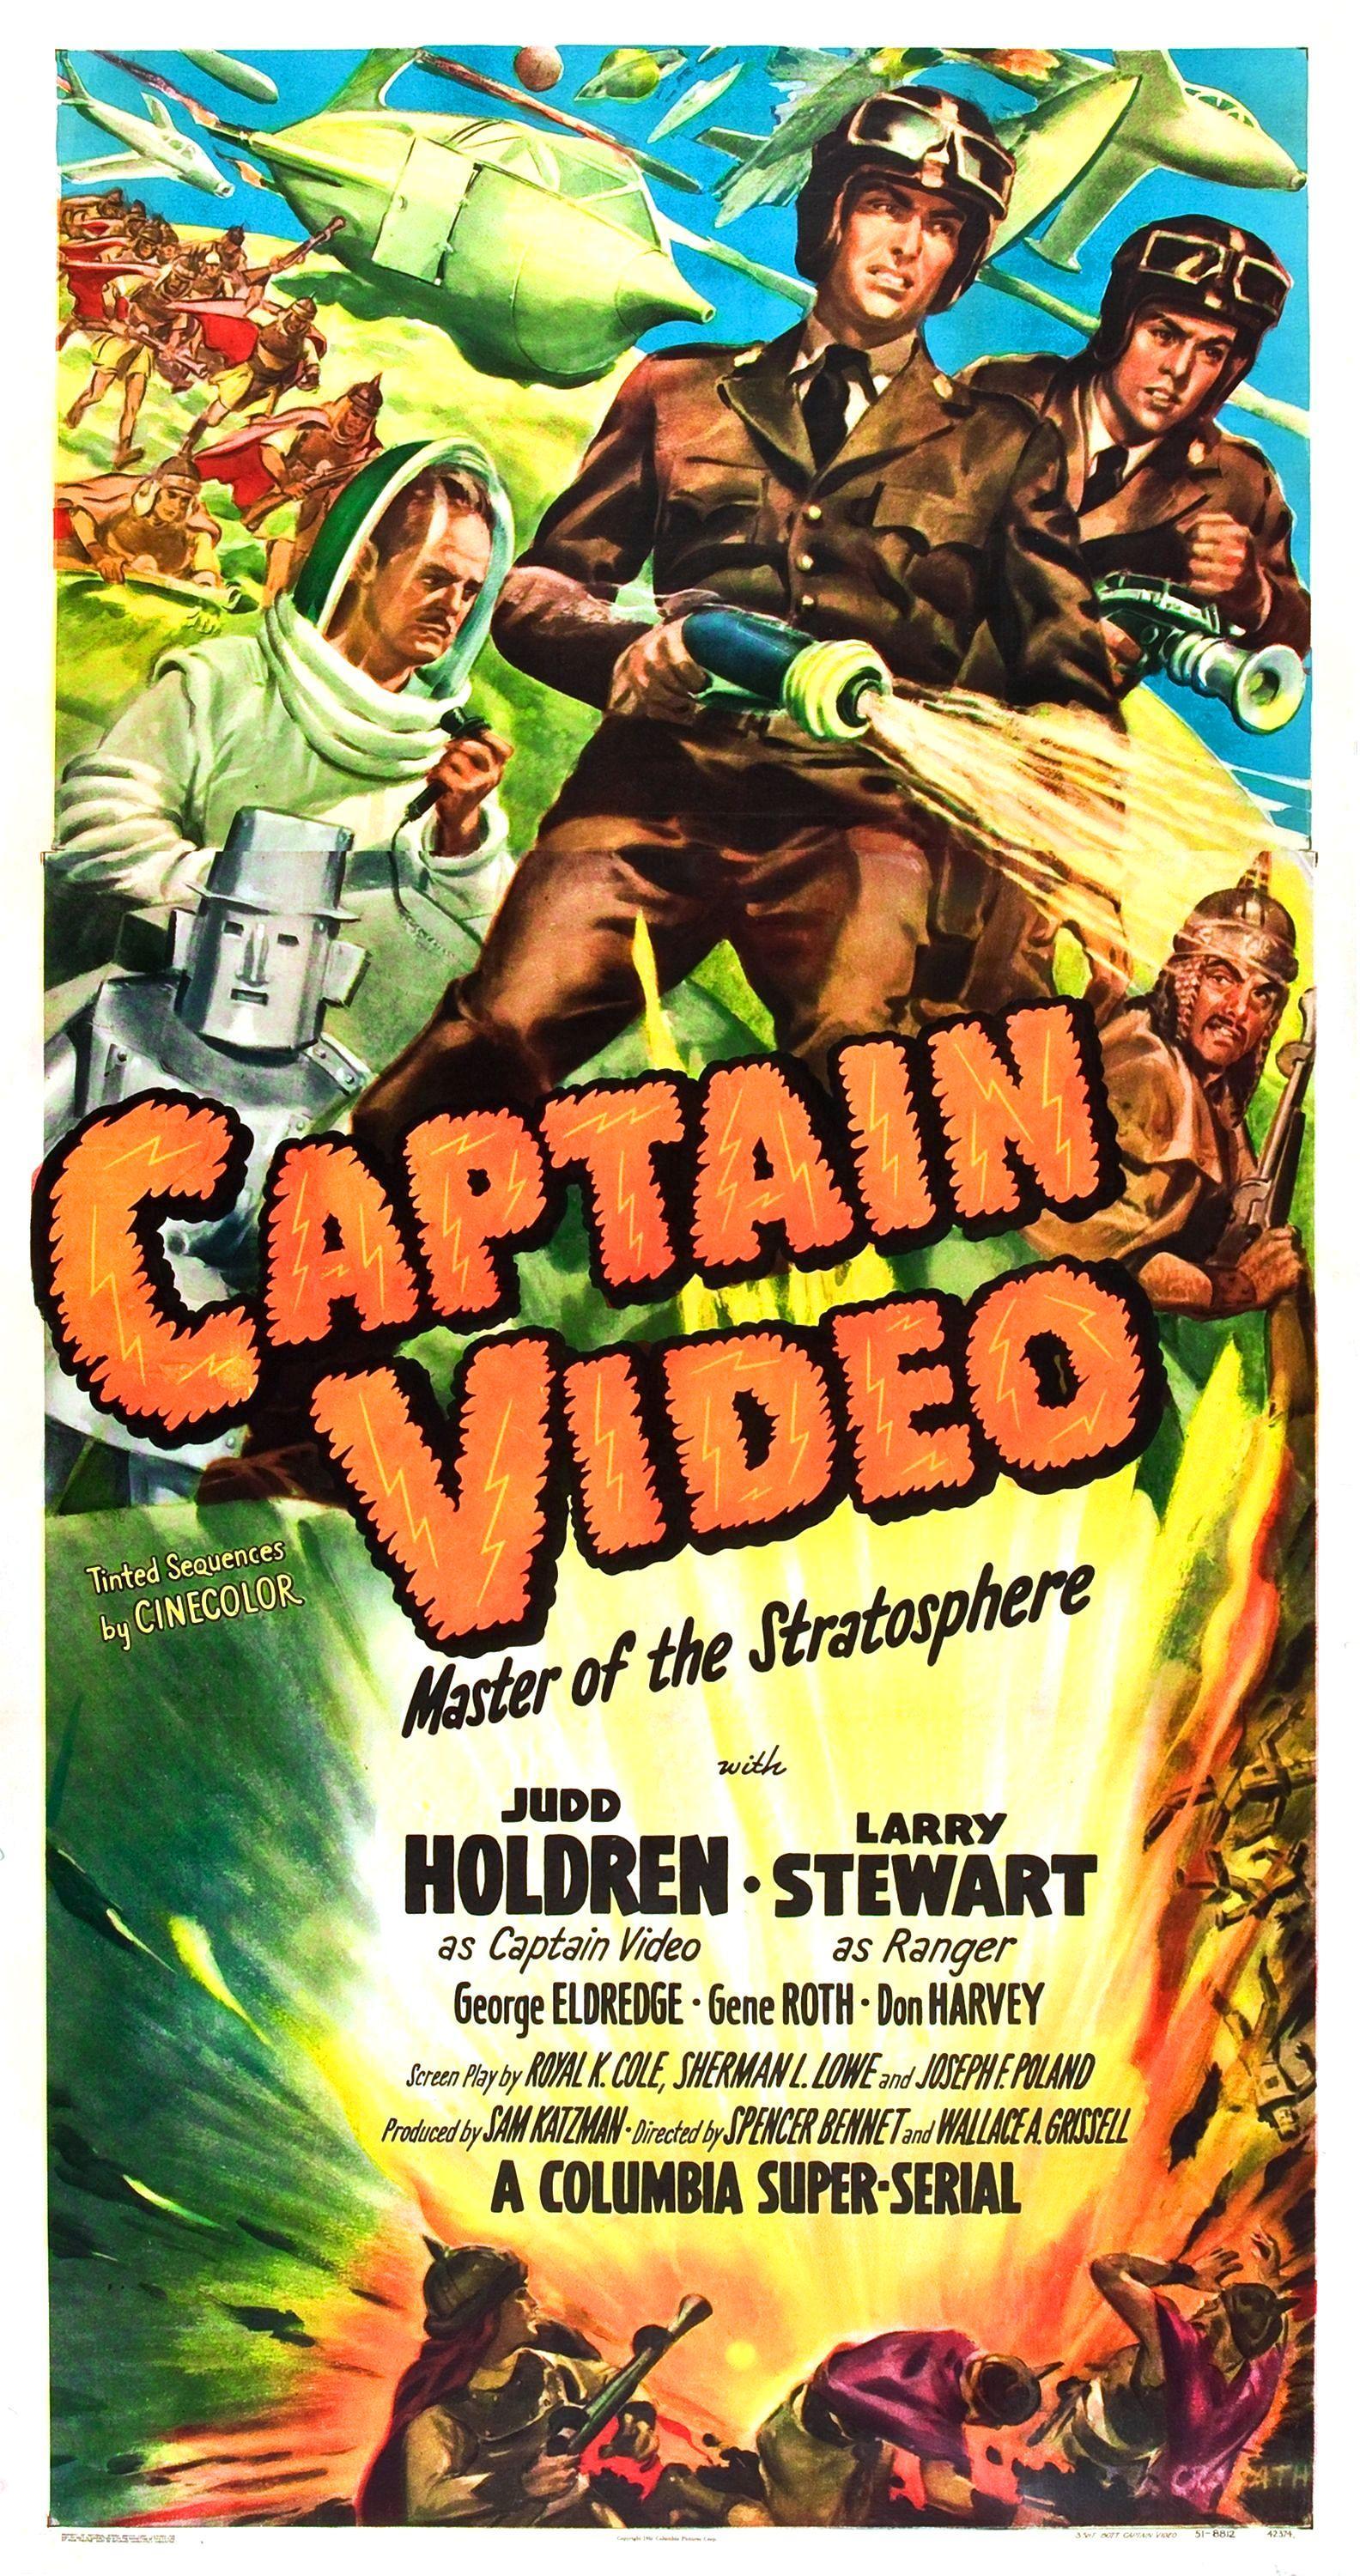 Постер фильма Captain Video, Master of the Stratosphere